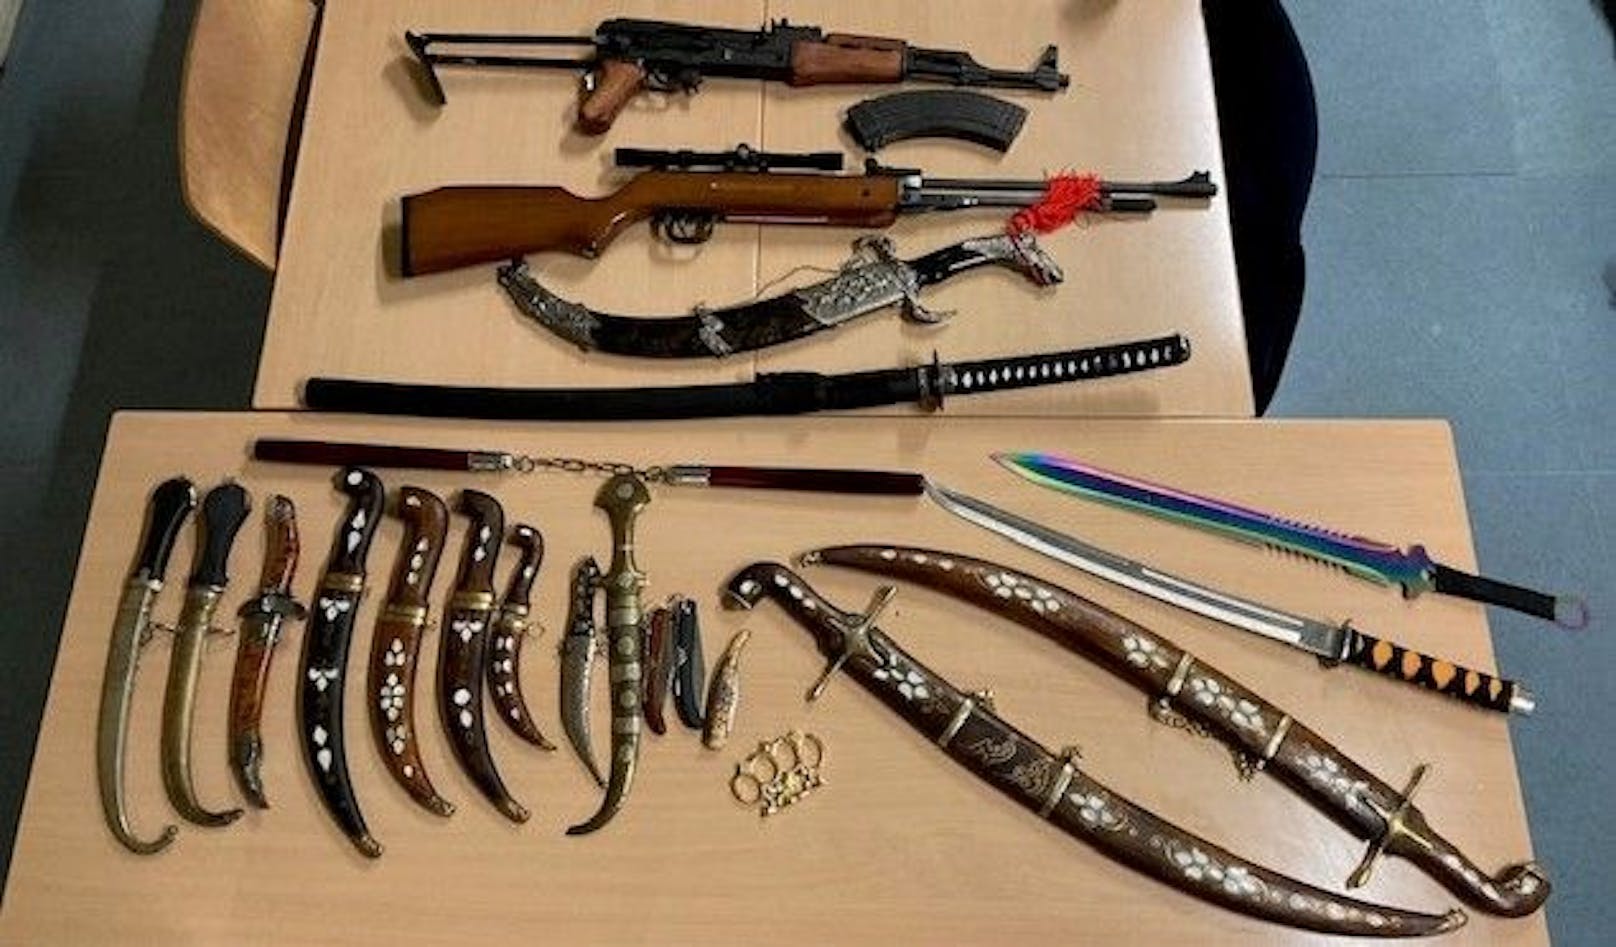 Die 22 Waffen wurden von der Polizei sichergestellt.